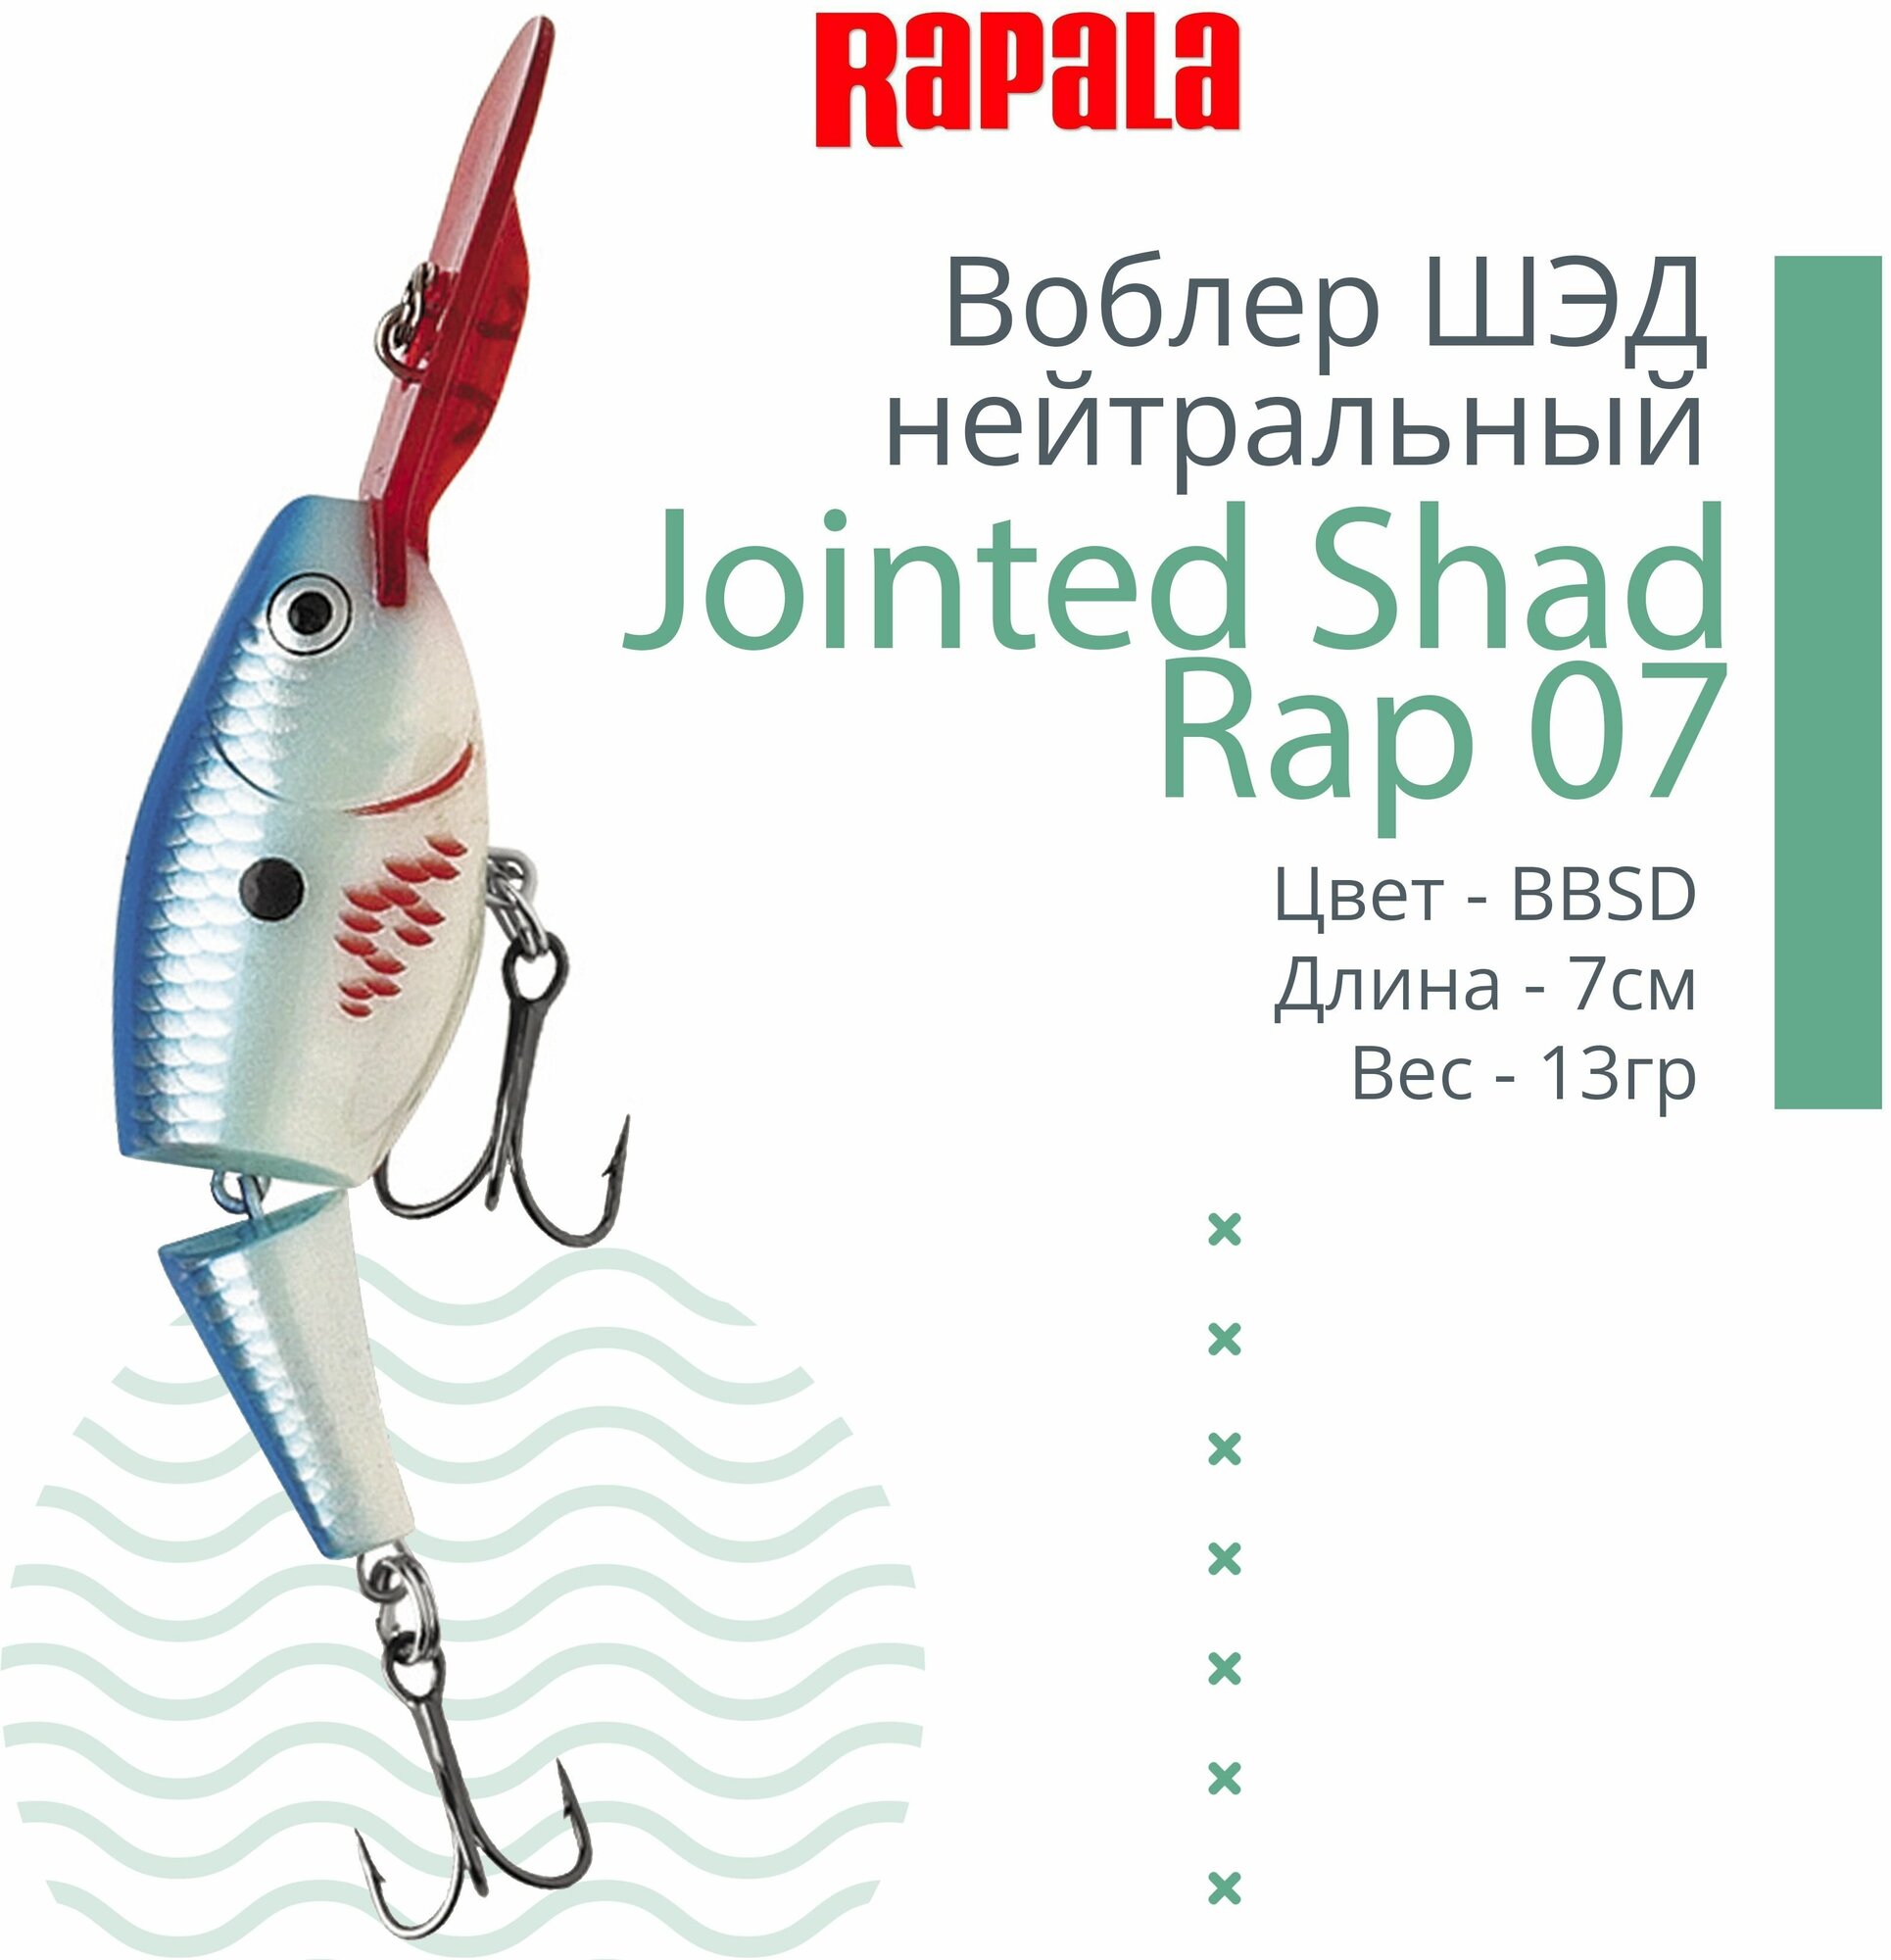 Воблер для рыбалки RAPALA Jointed Shad Rap 07, 7см, 13гр, цвет BBSD, нейтральный